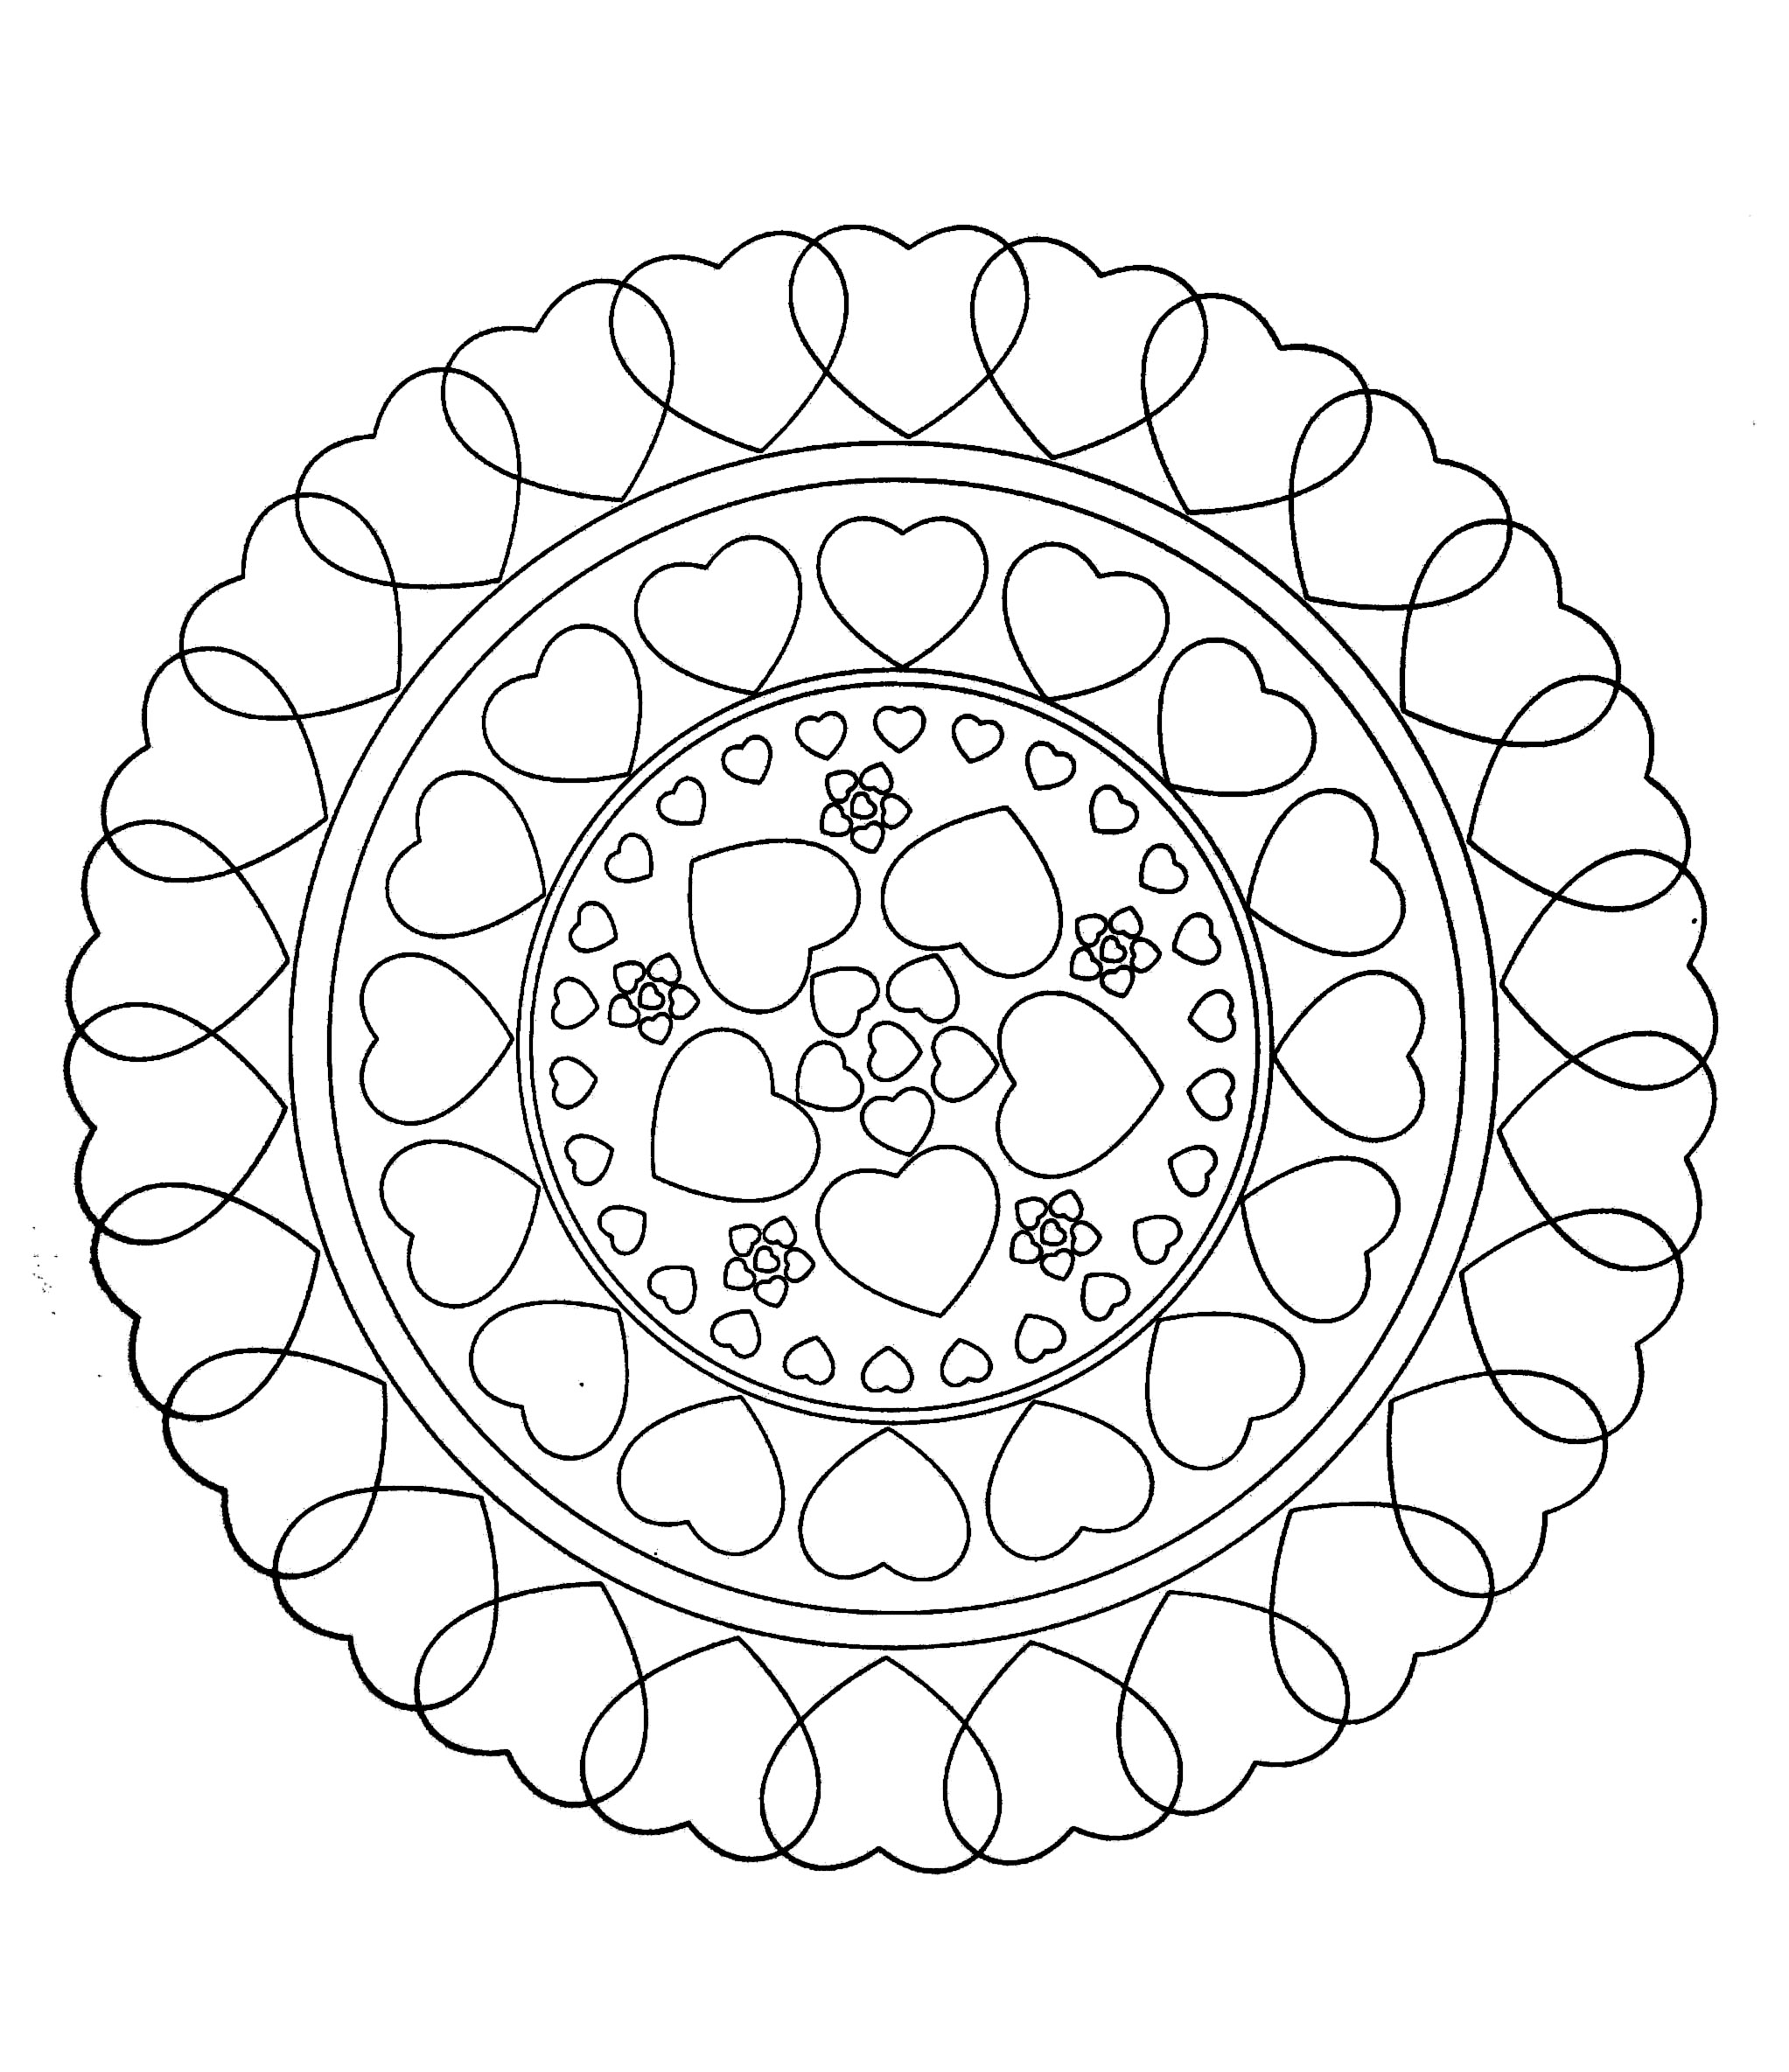 Mandala a colorier zen relax gratuit 26 - Image avec : Coeur